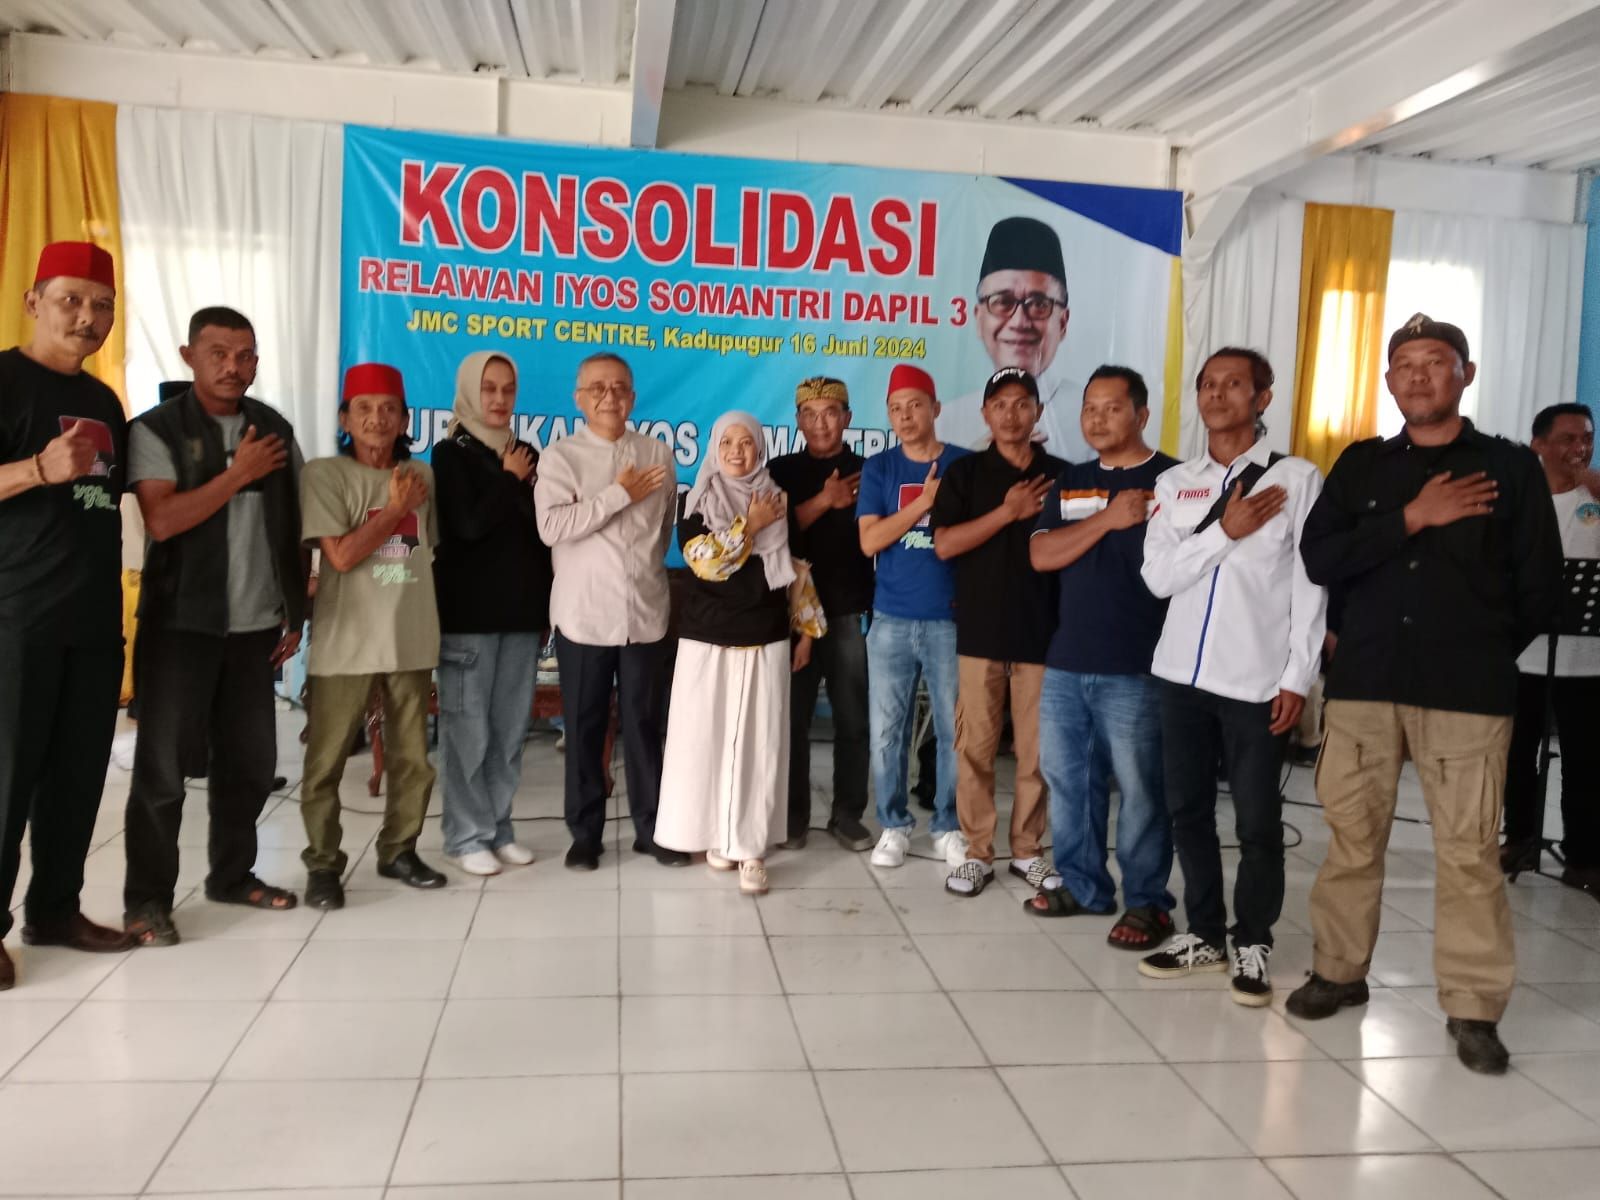 Relawan Forum Relawan Iyos Somantri tengah bertemu dengan calon bupati Sukabumi Iyos Somantr